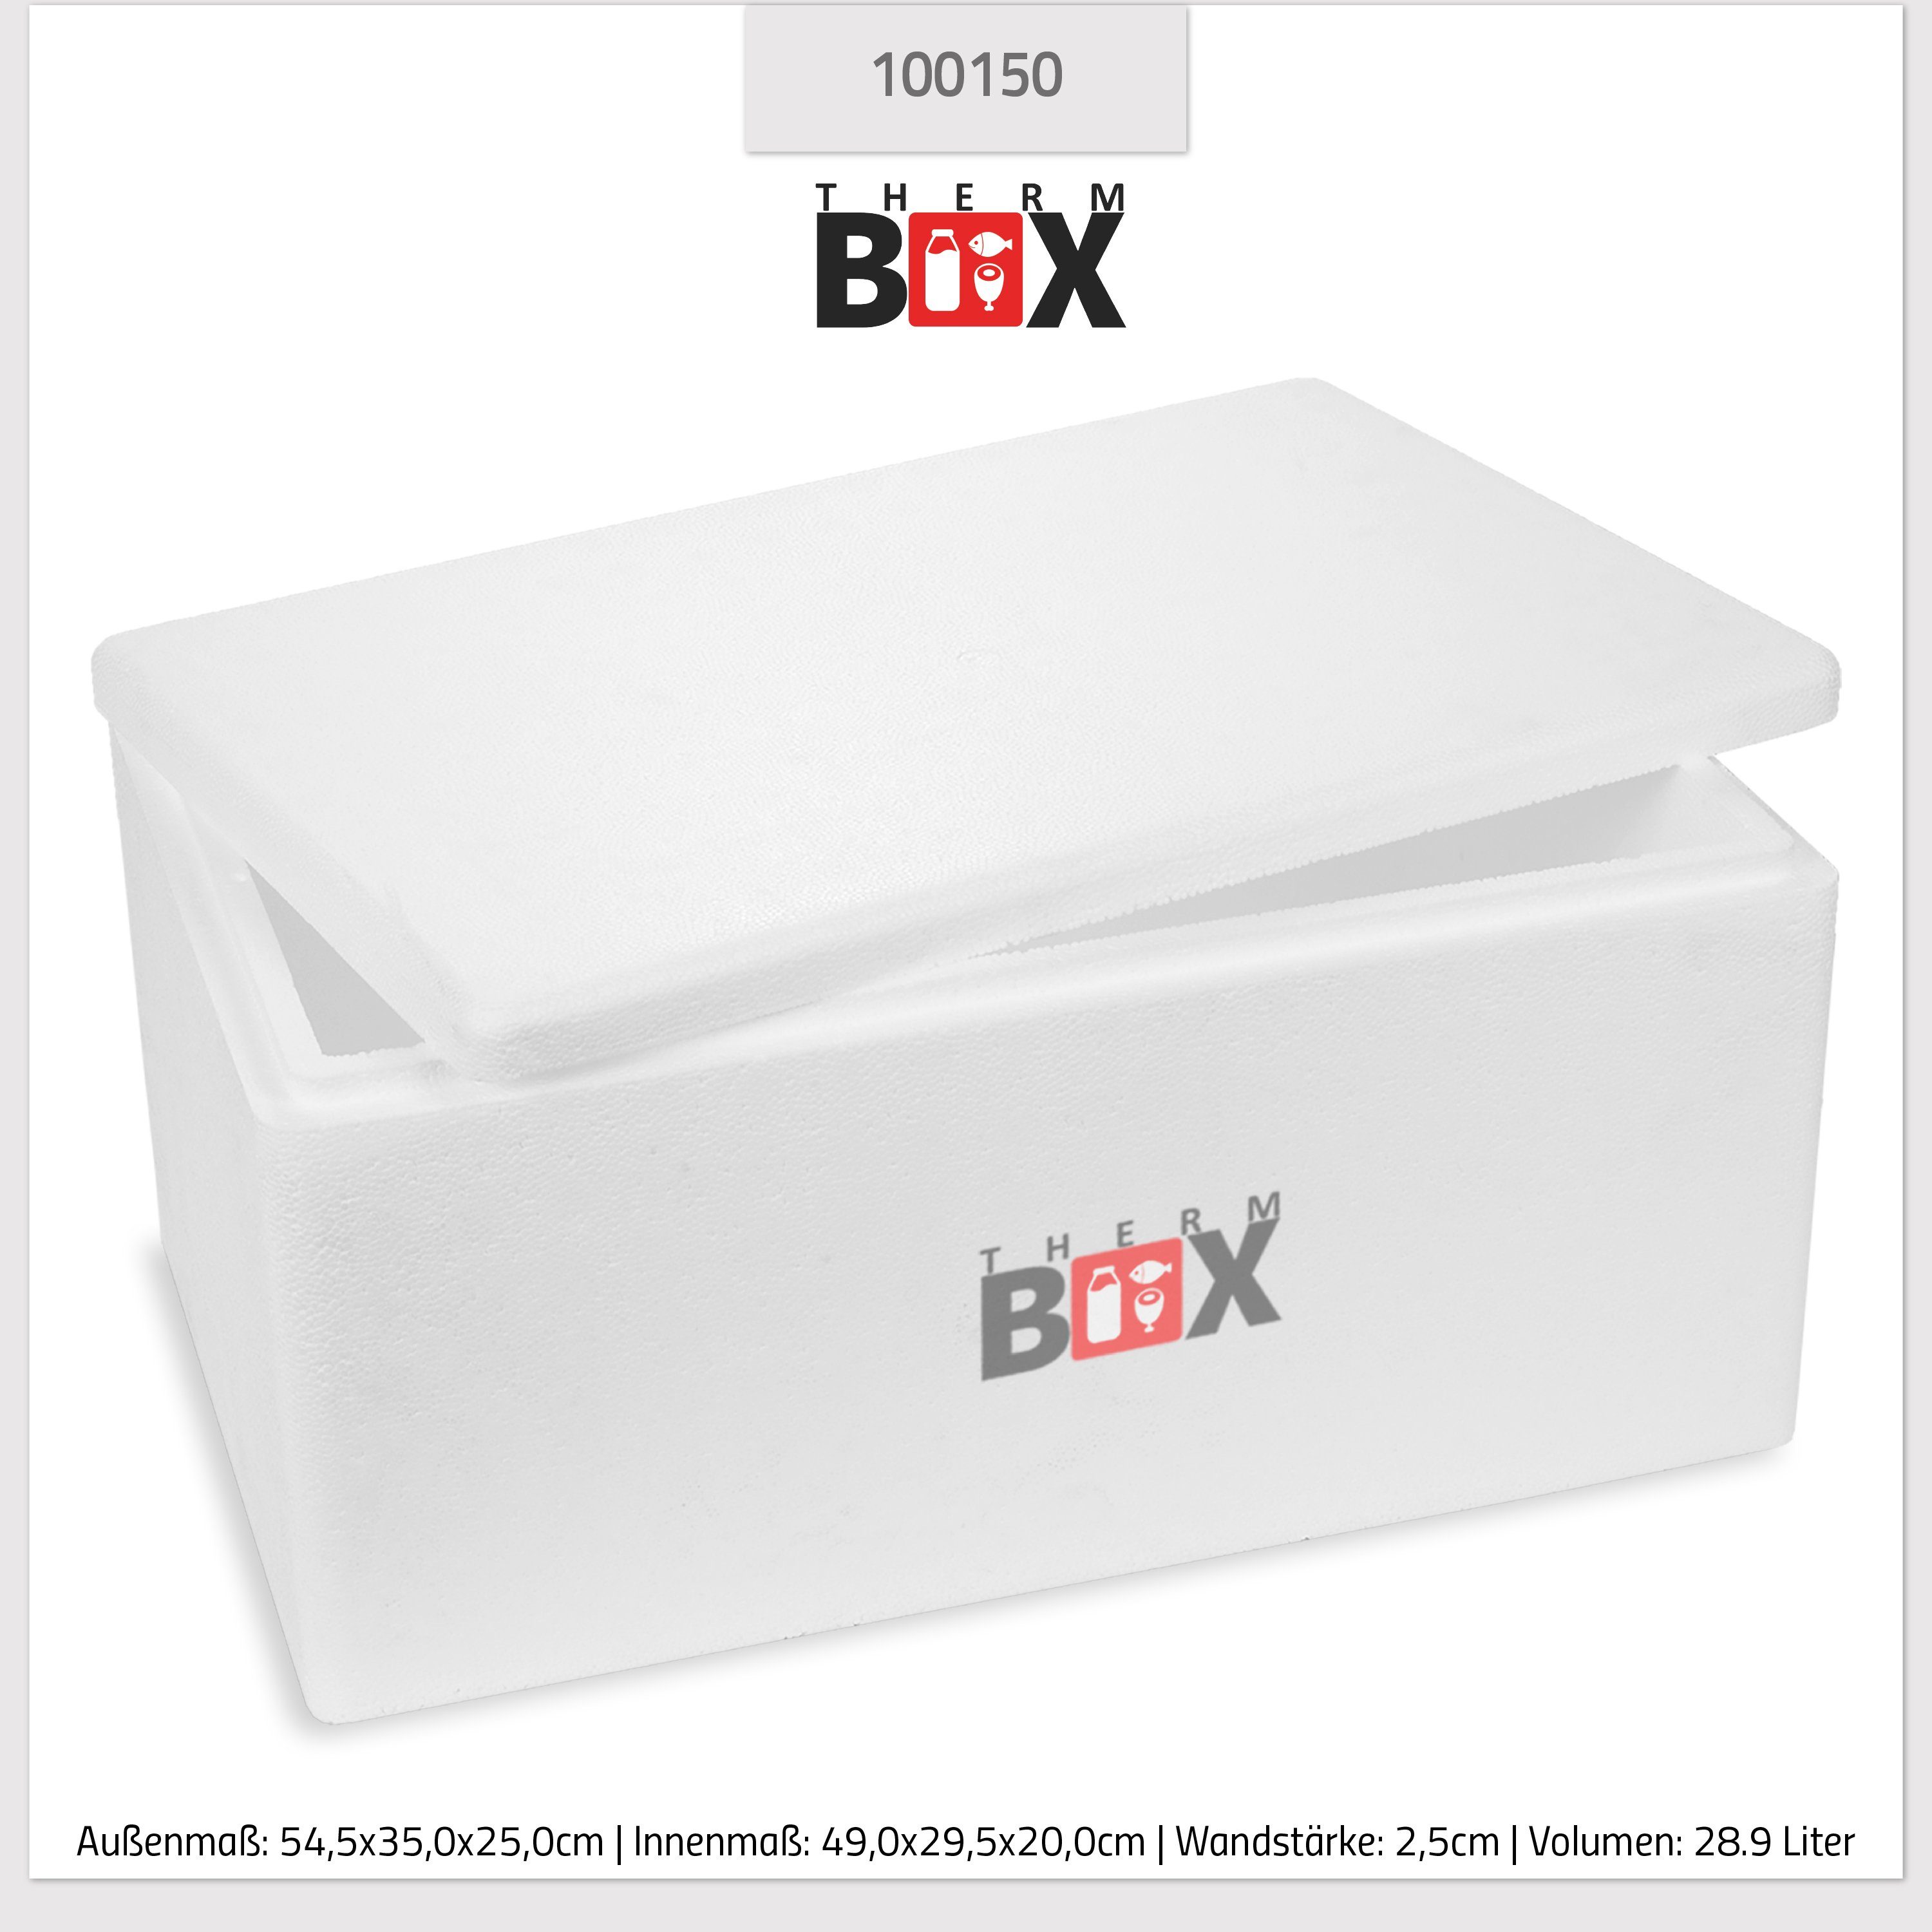 & 28W Innen: Thermobehälter für Deckel mit Thermobox Warmhaltebox im Styropor-Verdichtet, 49x29,5x20cm Essen Box THERM-BOX Karton), Getränke Wiederverwendbar, 28,91 Styroporbox (0-tlg., Liter Kühlbox